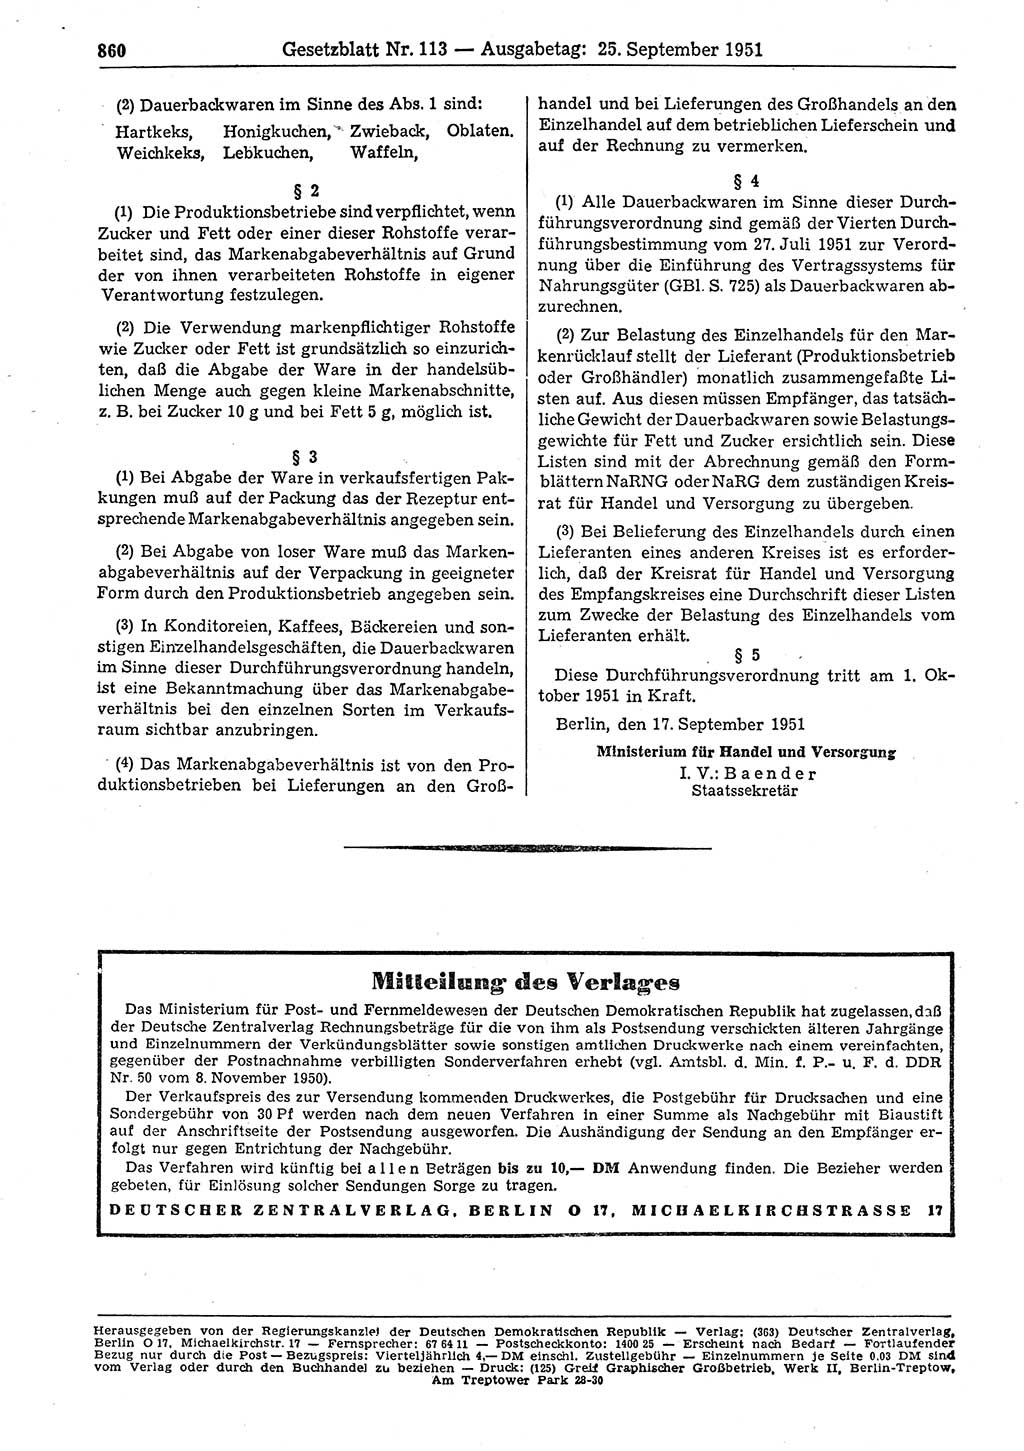 Gesetzblatt (GBl.) der Deutschen Demokratischen Republik (DDR) 1951, Seite 860 (GBl. DDR 1951, S. 860)